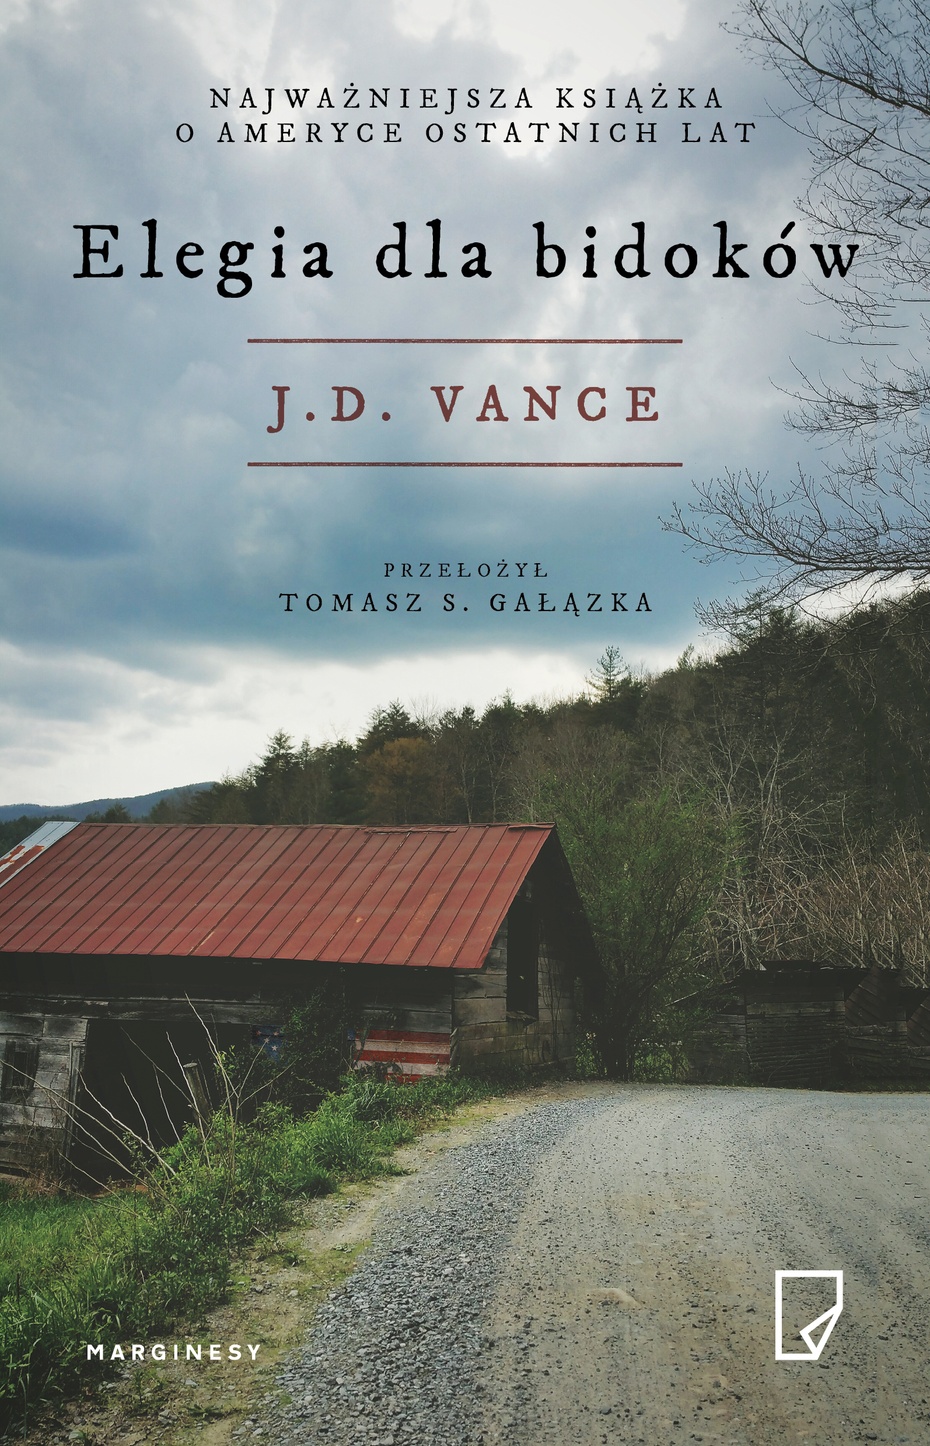 J.D.Vance, Elegia dla bidoków, Wydawnictwo Marginesy 2018